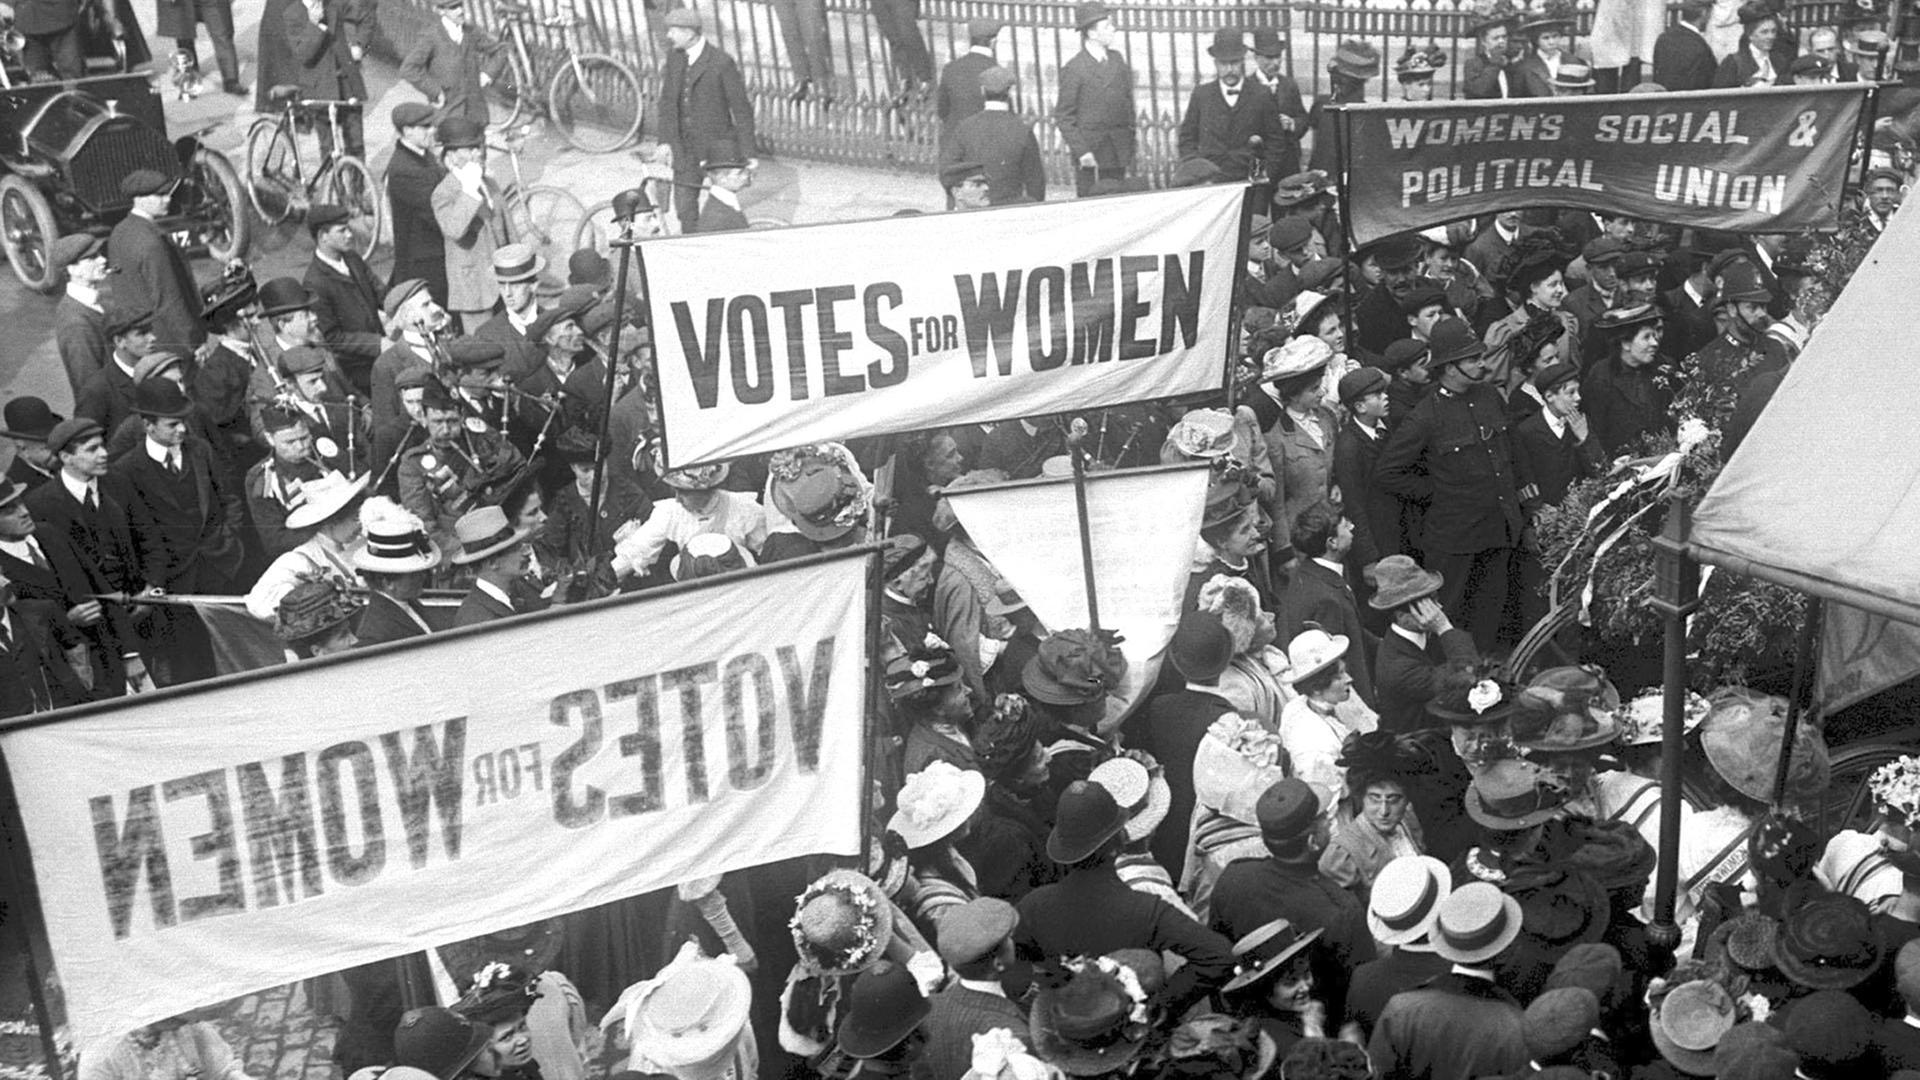 1910 demonstrieren Sufragetten vor den Londoner "Houses of Parliament". Auf ihren Plakaten steht: "Votes for Women", "Womens Social & Political Union".